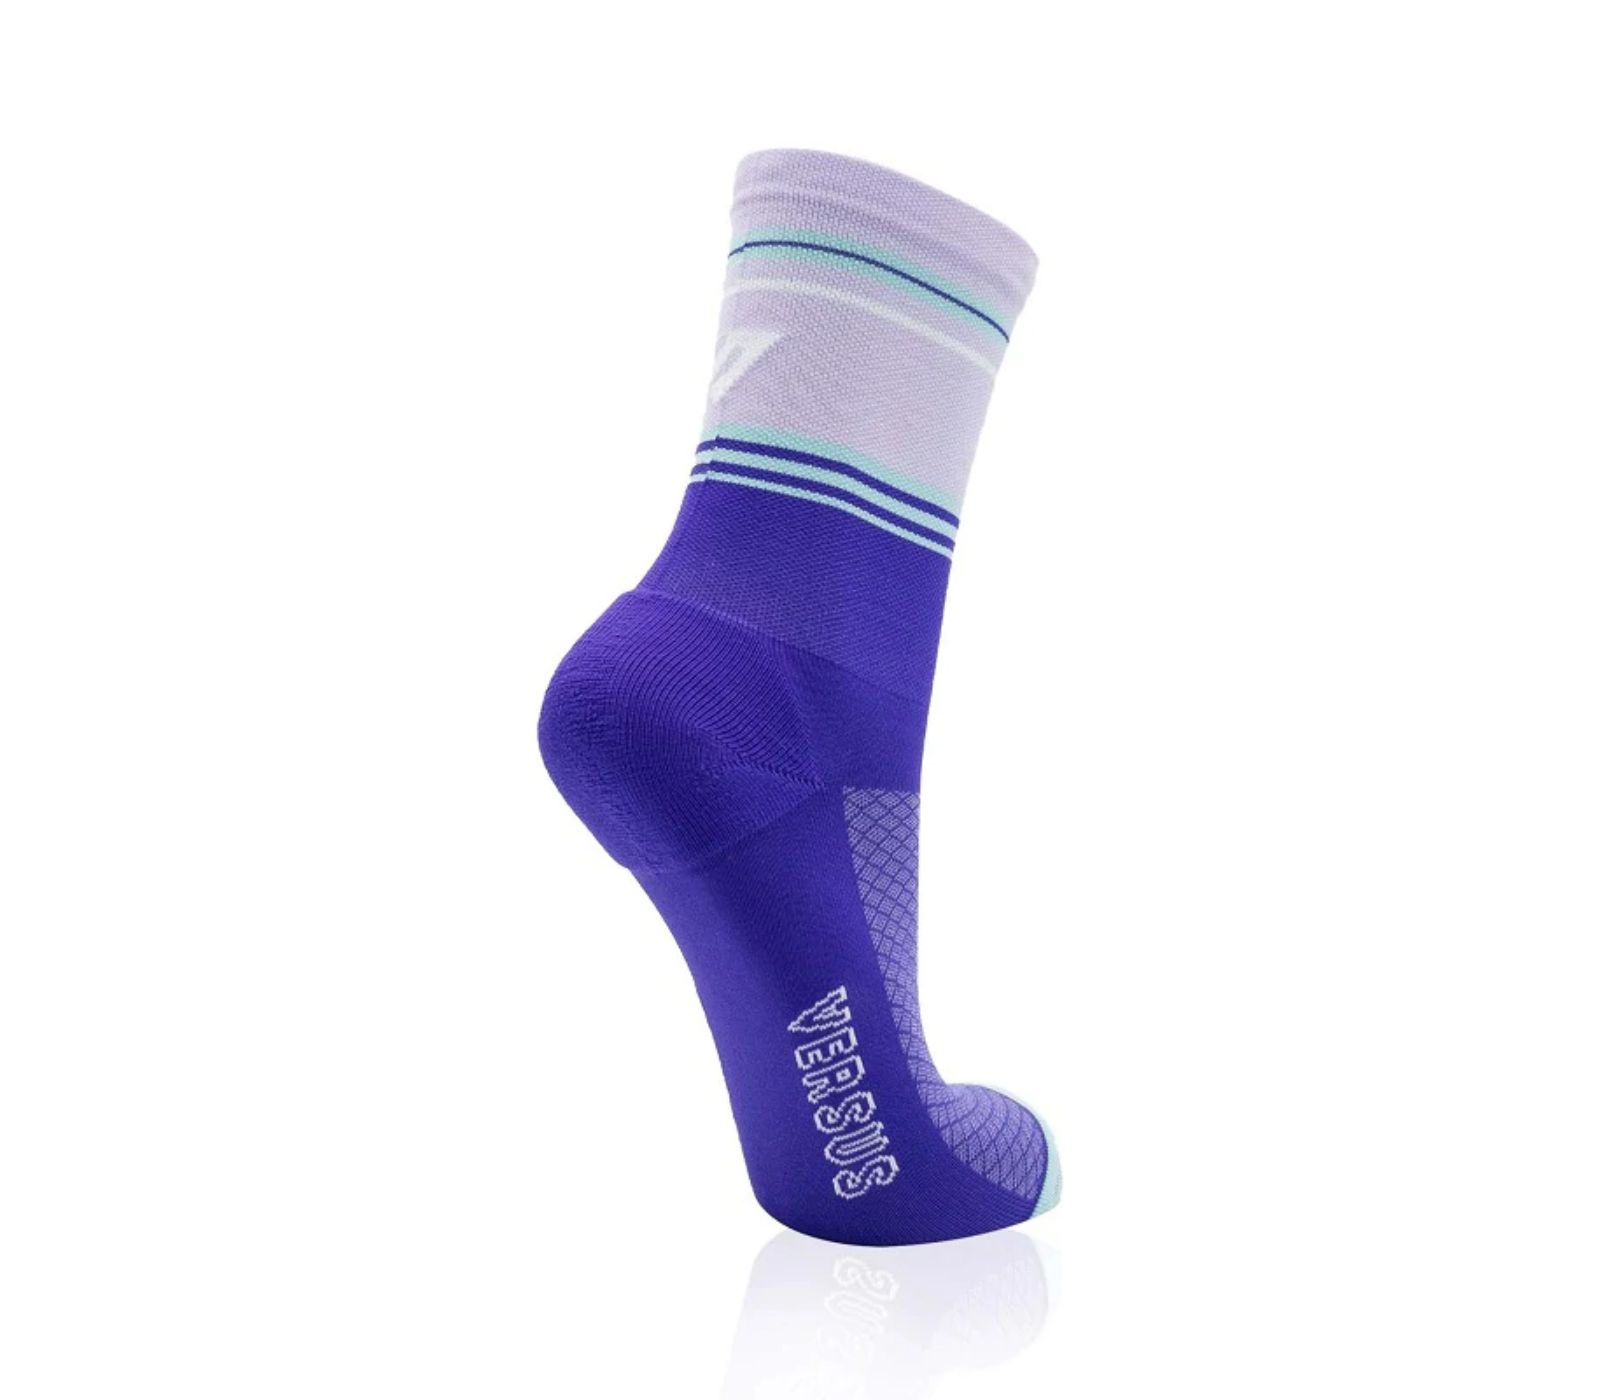 Versus Purple Typhoon Unisex Socks